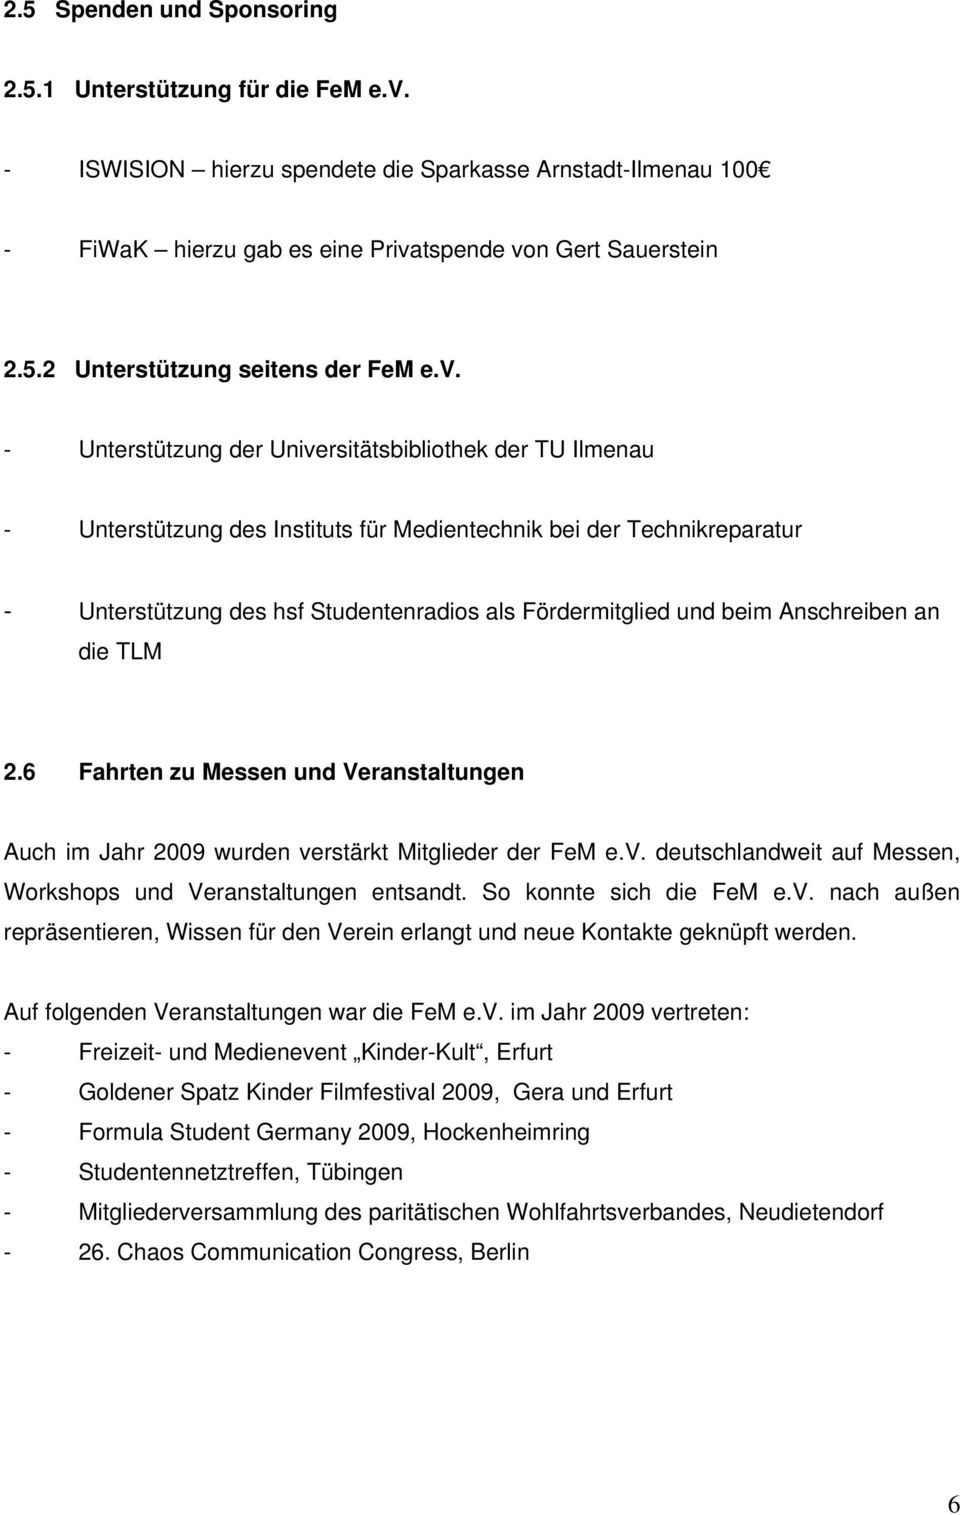 beim Anschreiben an die TLM 2.6 Fahrten zu Messen und Veranstaltungen Auch im Jahr 2009 wurden verstärkt Mitglieder der FeM e.v. deutschlandweit auf Messen, Workshops und Veranstaltungen entsandt.